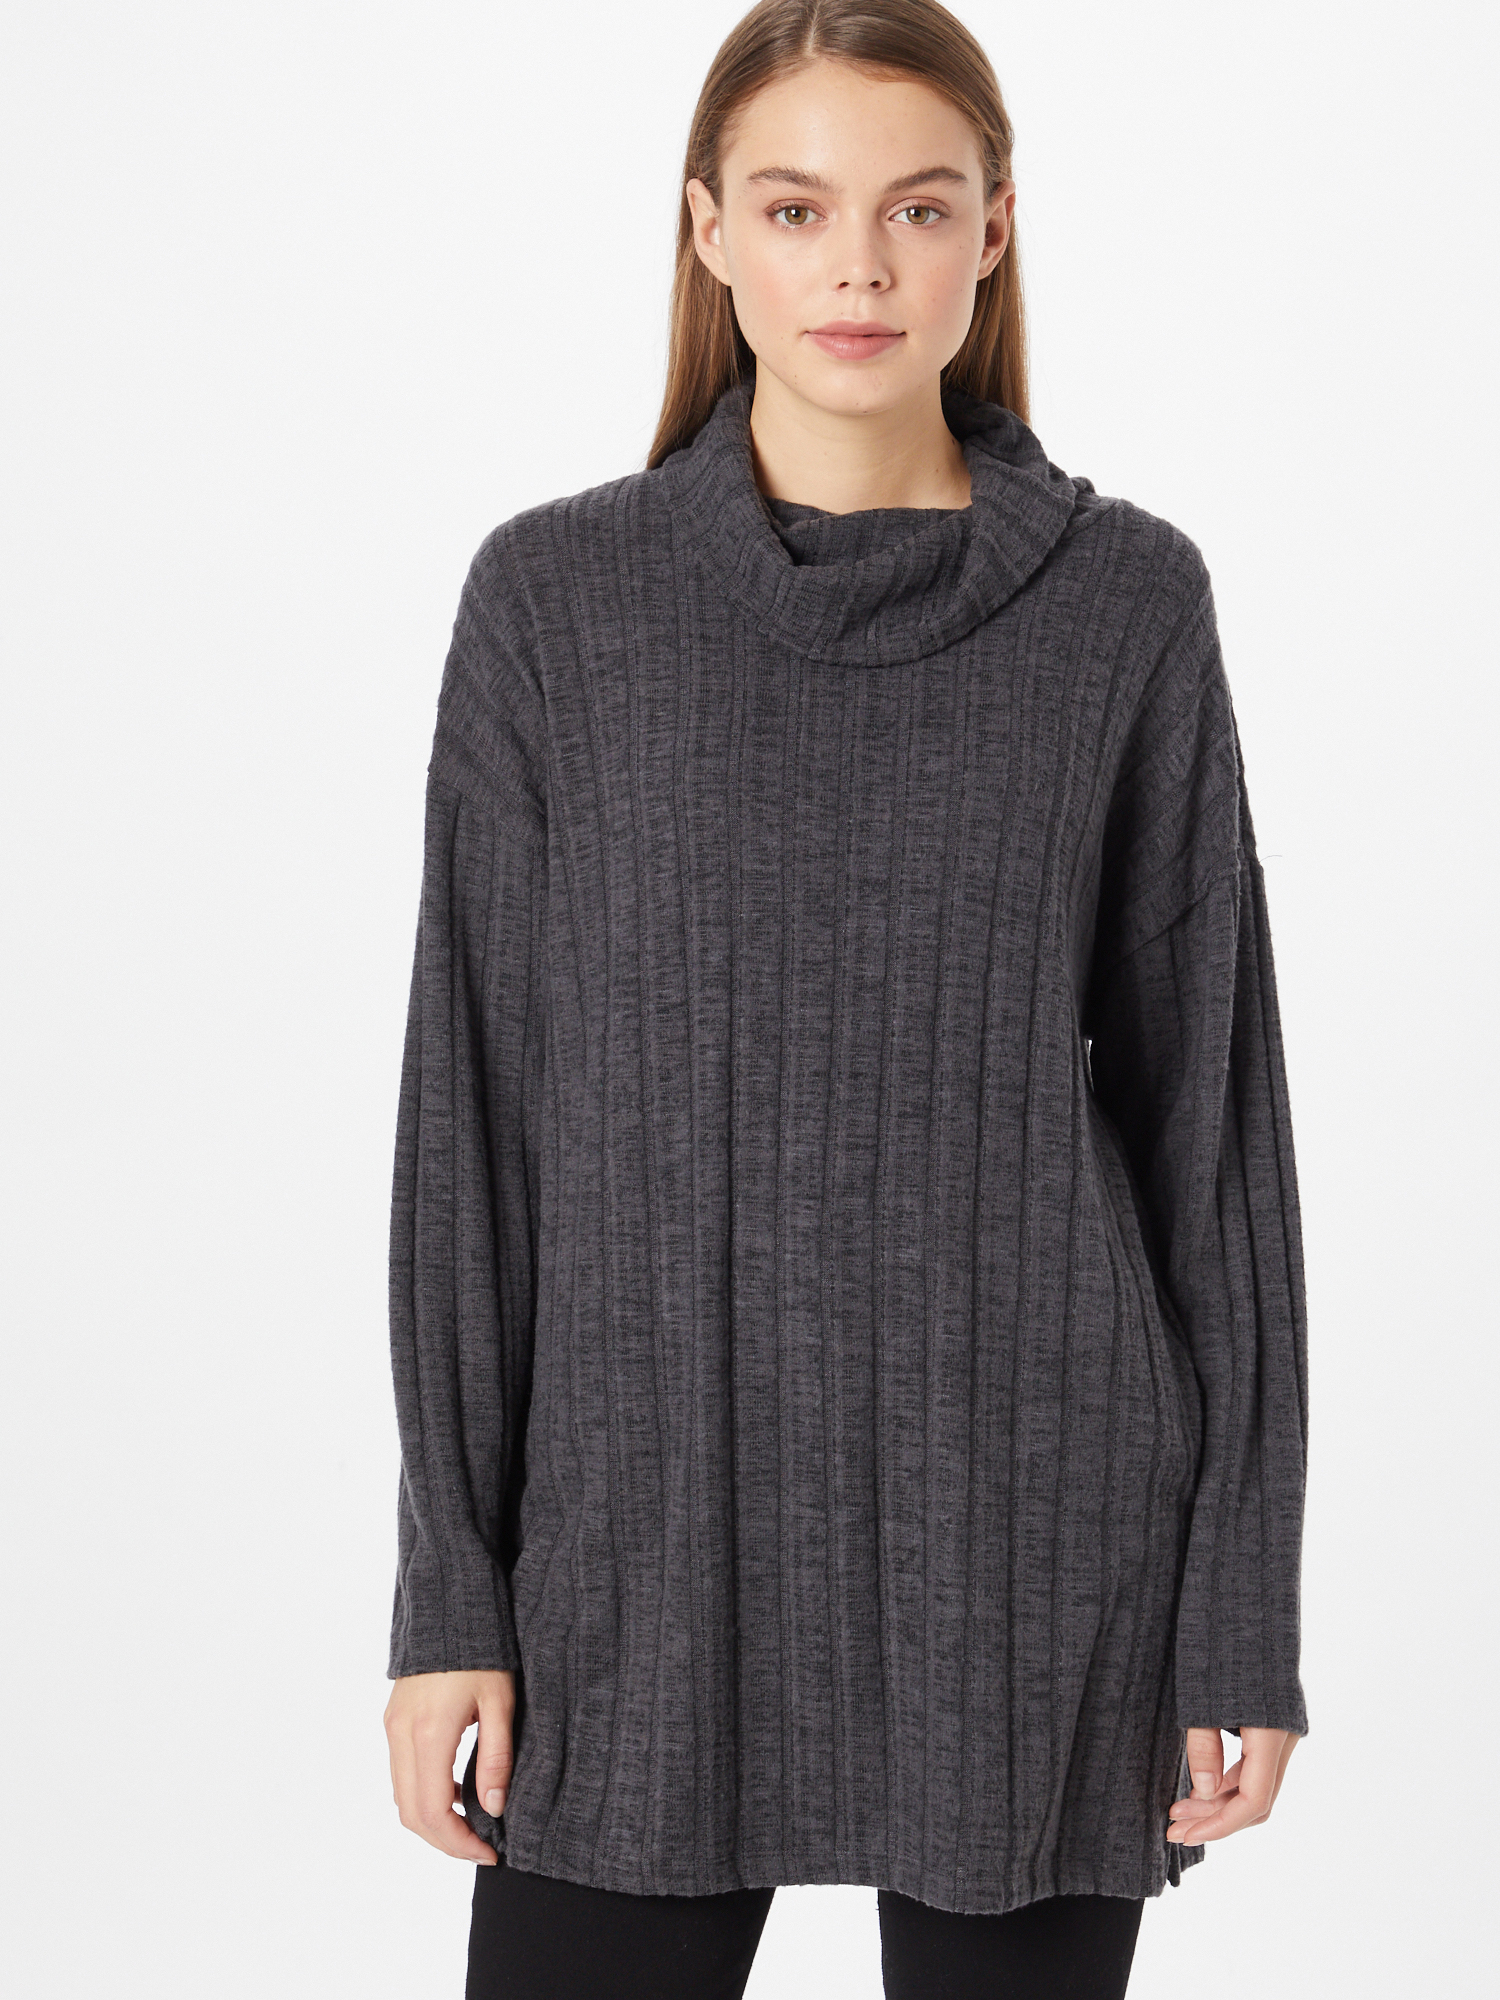 Odzież Kobiety Soyaconcept Sweter ASTRA w kolorze Ciemnoszarym 